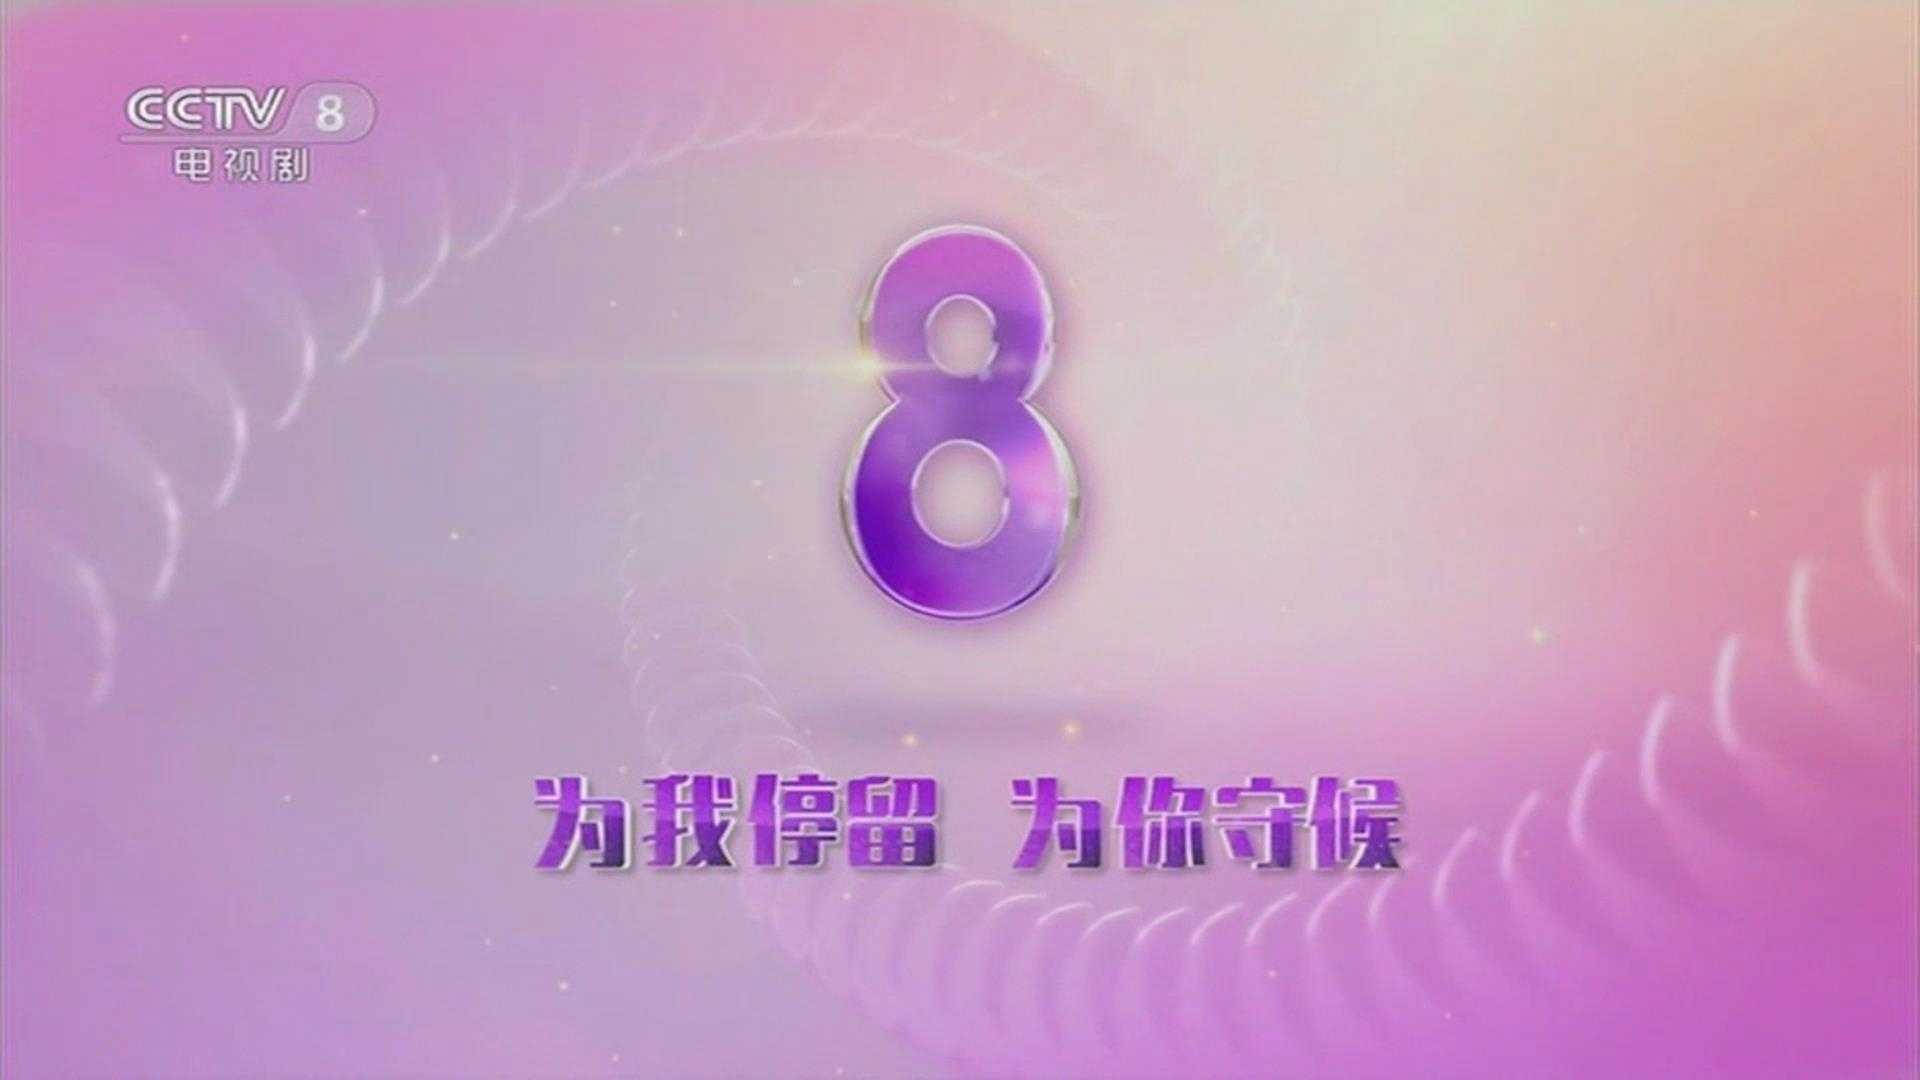 中央电视台CCTV8呼台